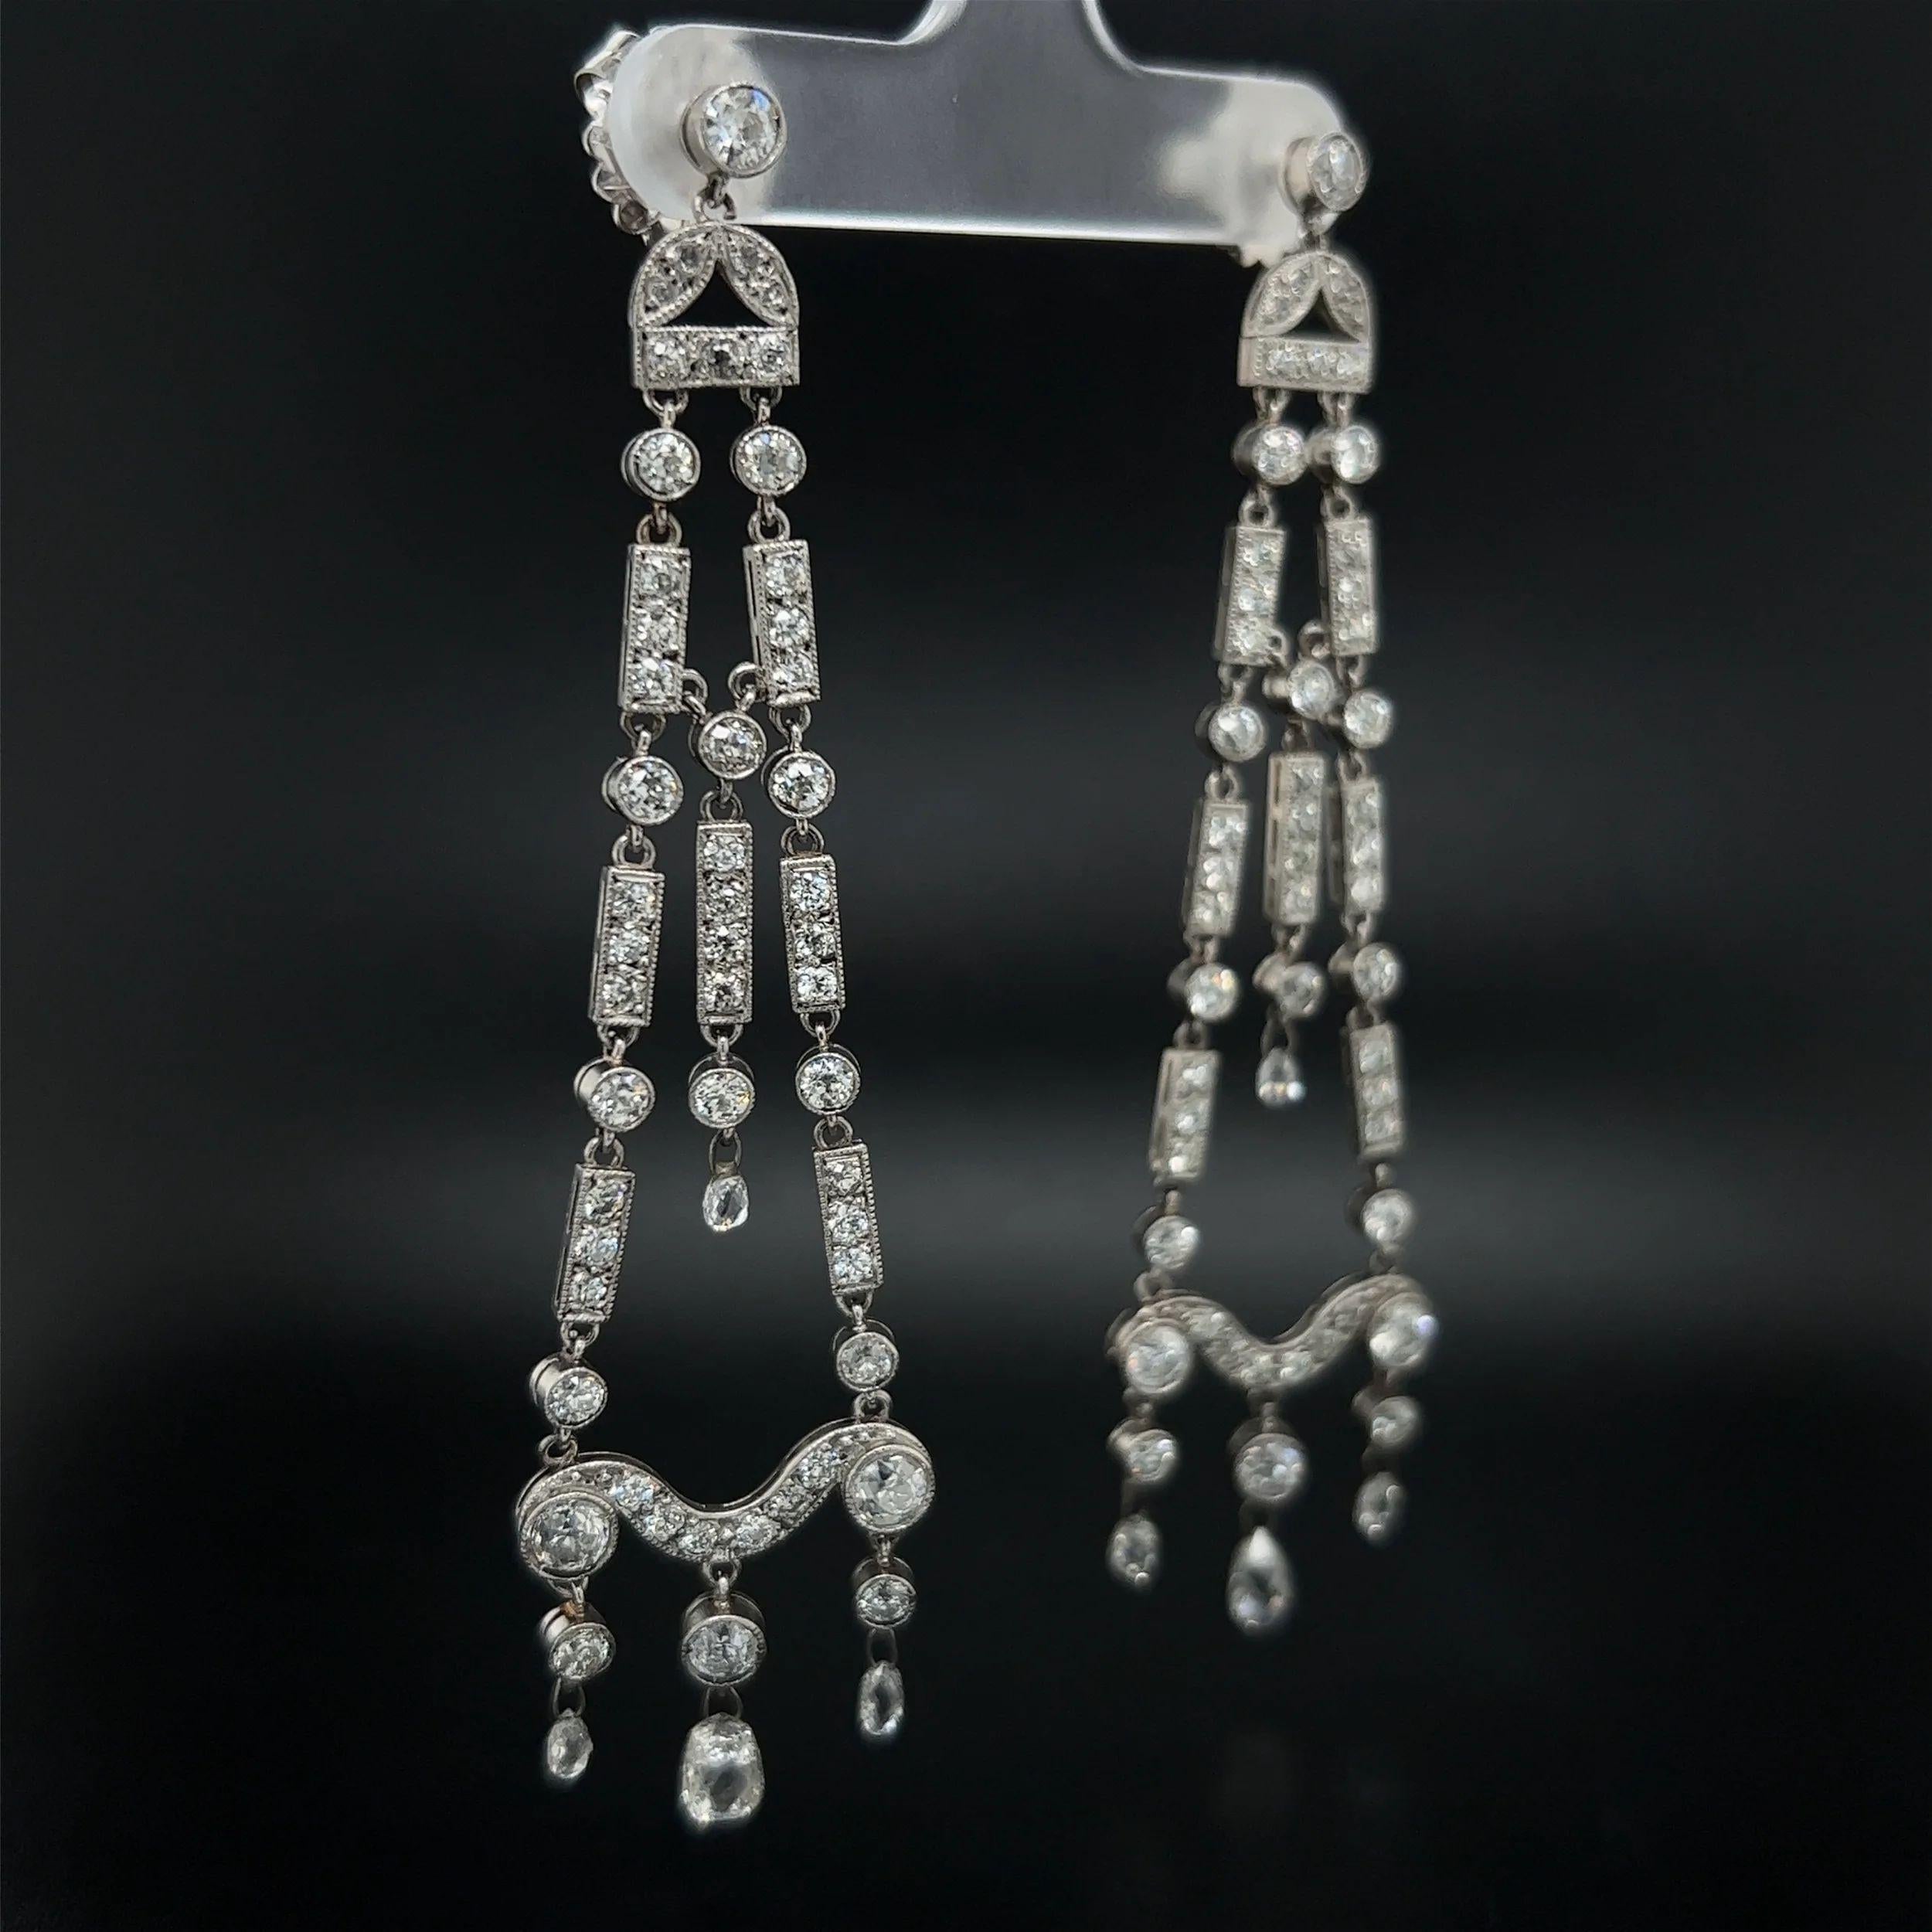 Einfach schön! Awesome Chandelier Diamond Platinum Drop Earrings. Von Hand gefasst mit 1,60 tcw Briolette Diamanten und 5,08 tcw Runde Old European Cut Diamanten. Wunderschön handgefertigt in Platin. Die Ohrringe sind ca. 3